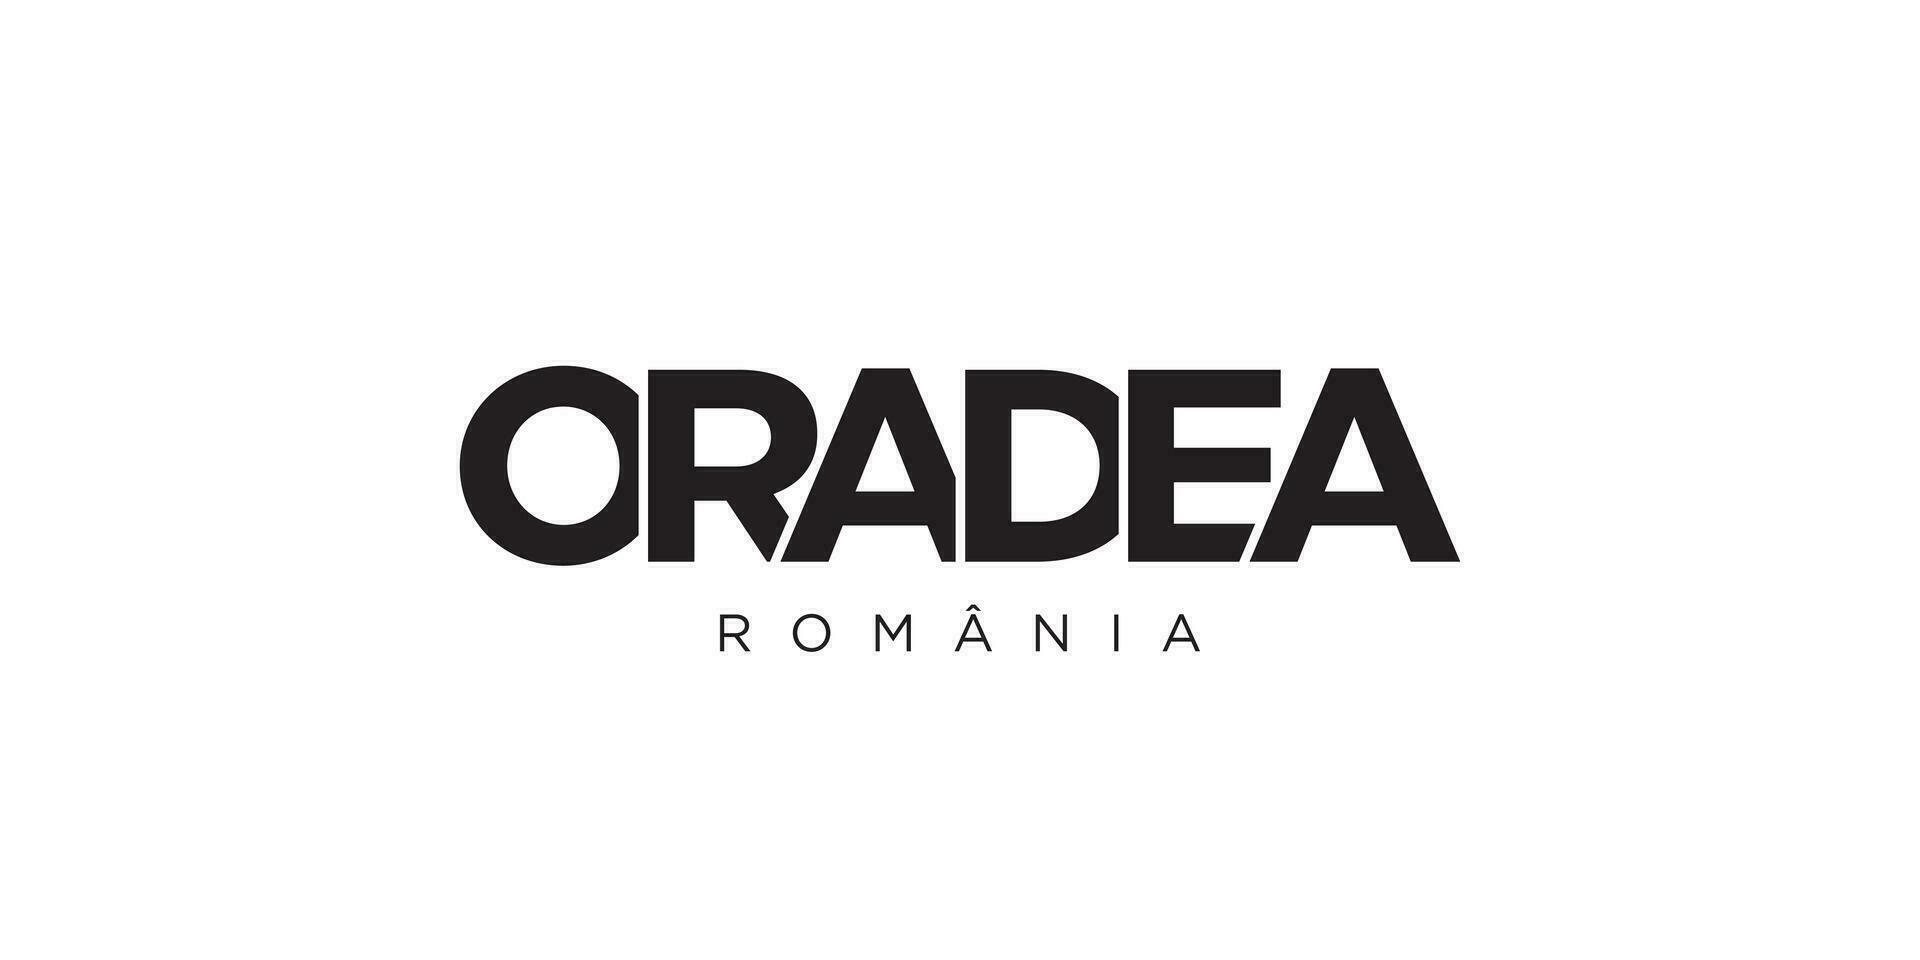 oradea im das Rumänien Emblem. das Design Eigenschaften ein geometrisch Stil, Vektor Illustration mit Fett gedruckt Typografie im ein modern Schriftart. das Grafik Slogan Beschriftung.